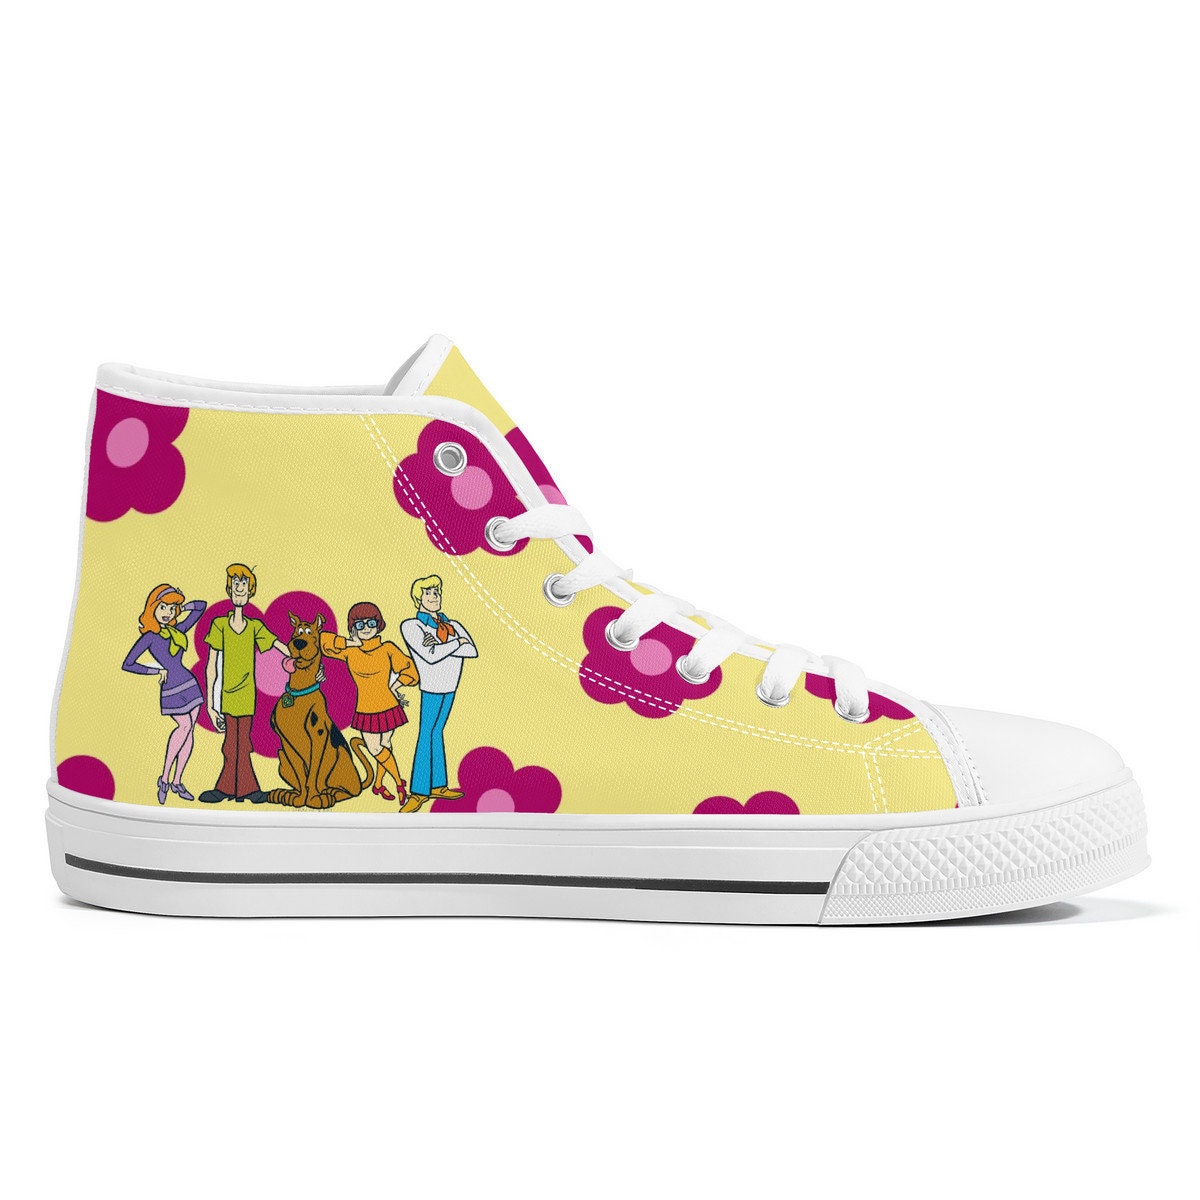 Scooby Doo, Flower Power, Cartoon High Top Sneakers